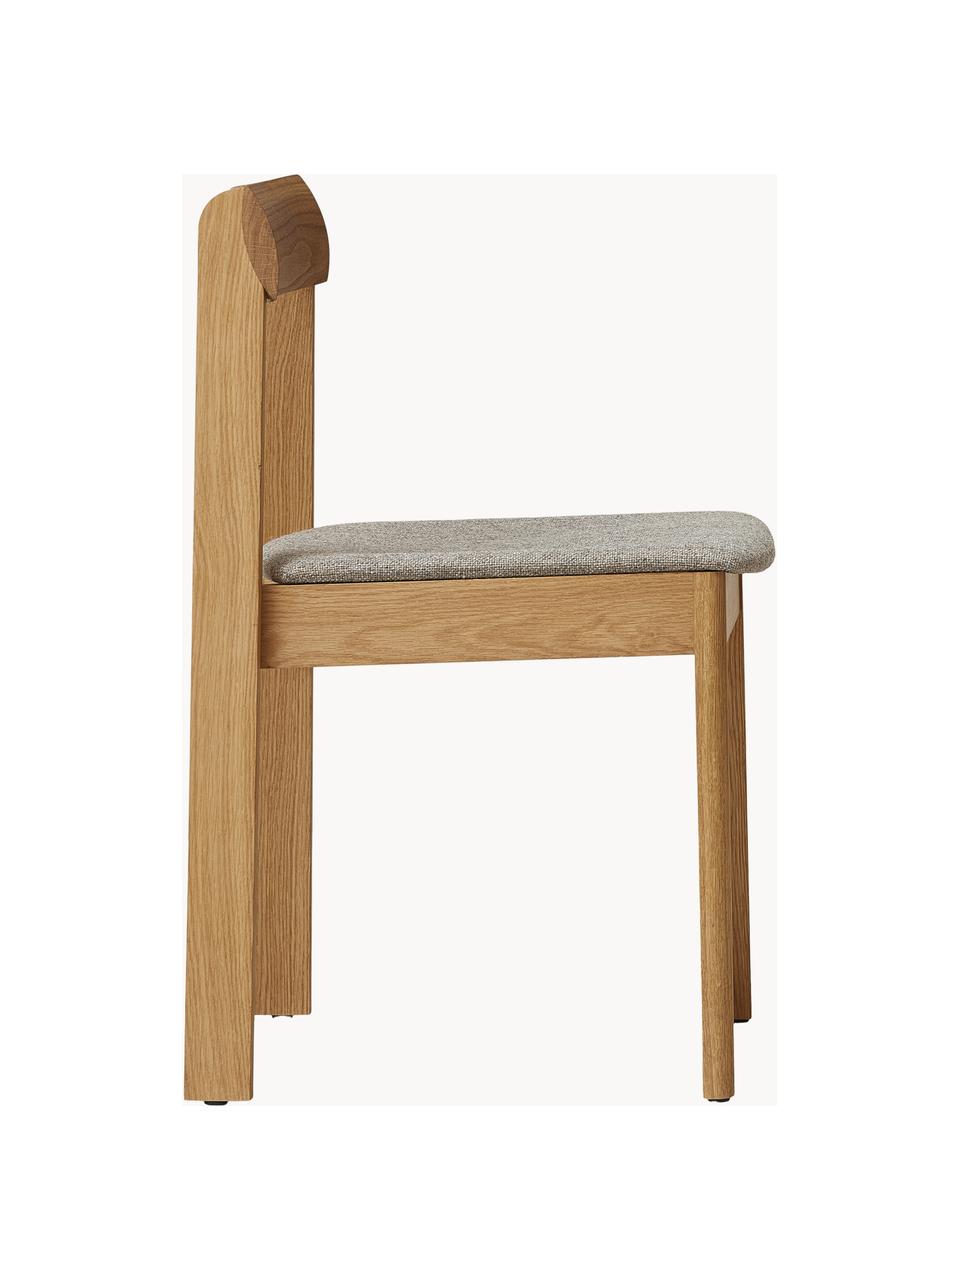 Stohovatelné dřevěné židle s podsedákem Blueprint, 2 ks, Šedá, dubové dřevo, Š 46 cm, H 49 cm